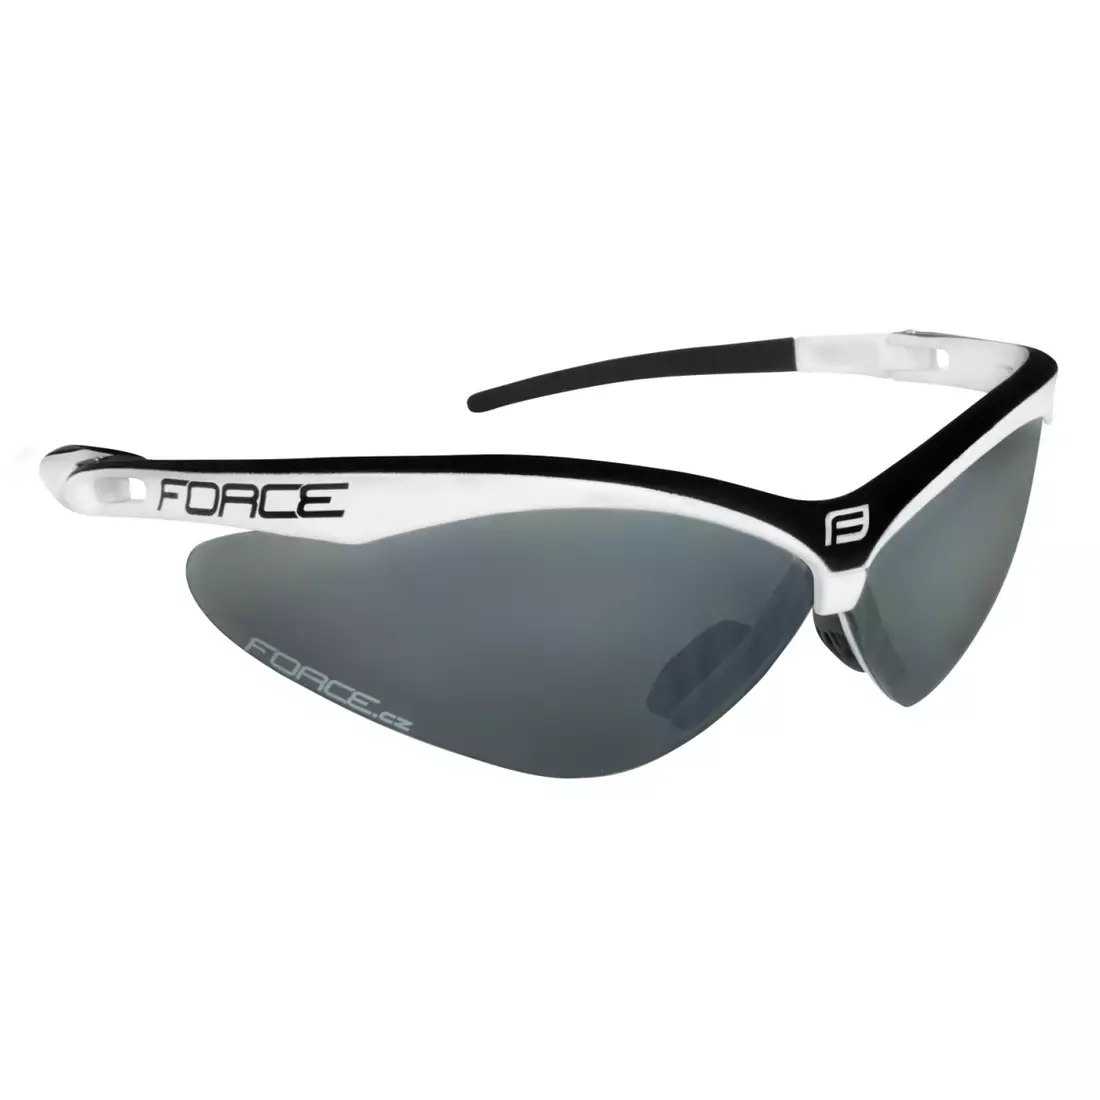 FORCE AIR szemüveg cserélhető lencsékkel, fehér és fekete 91041